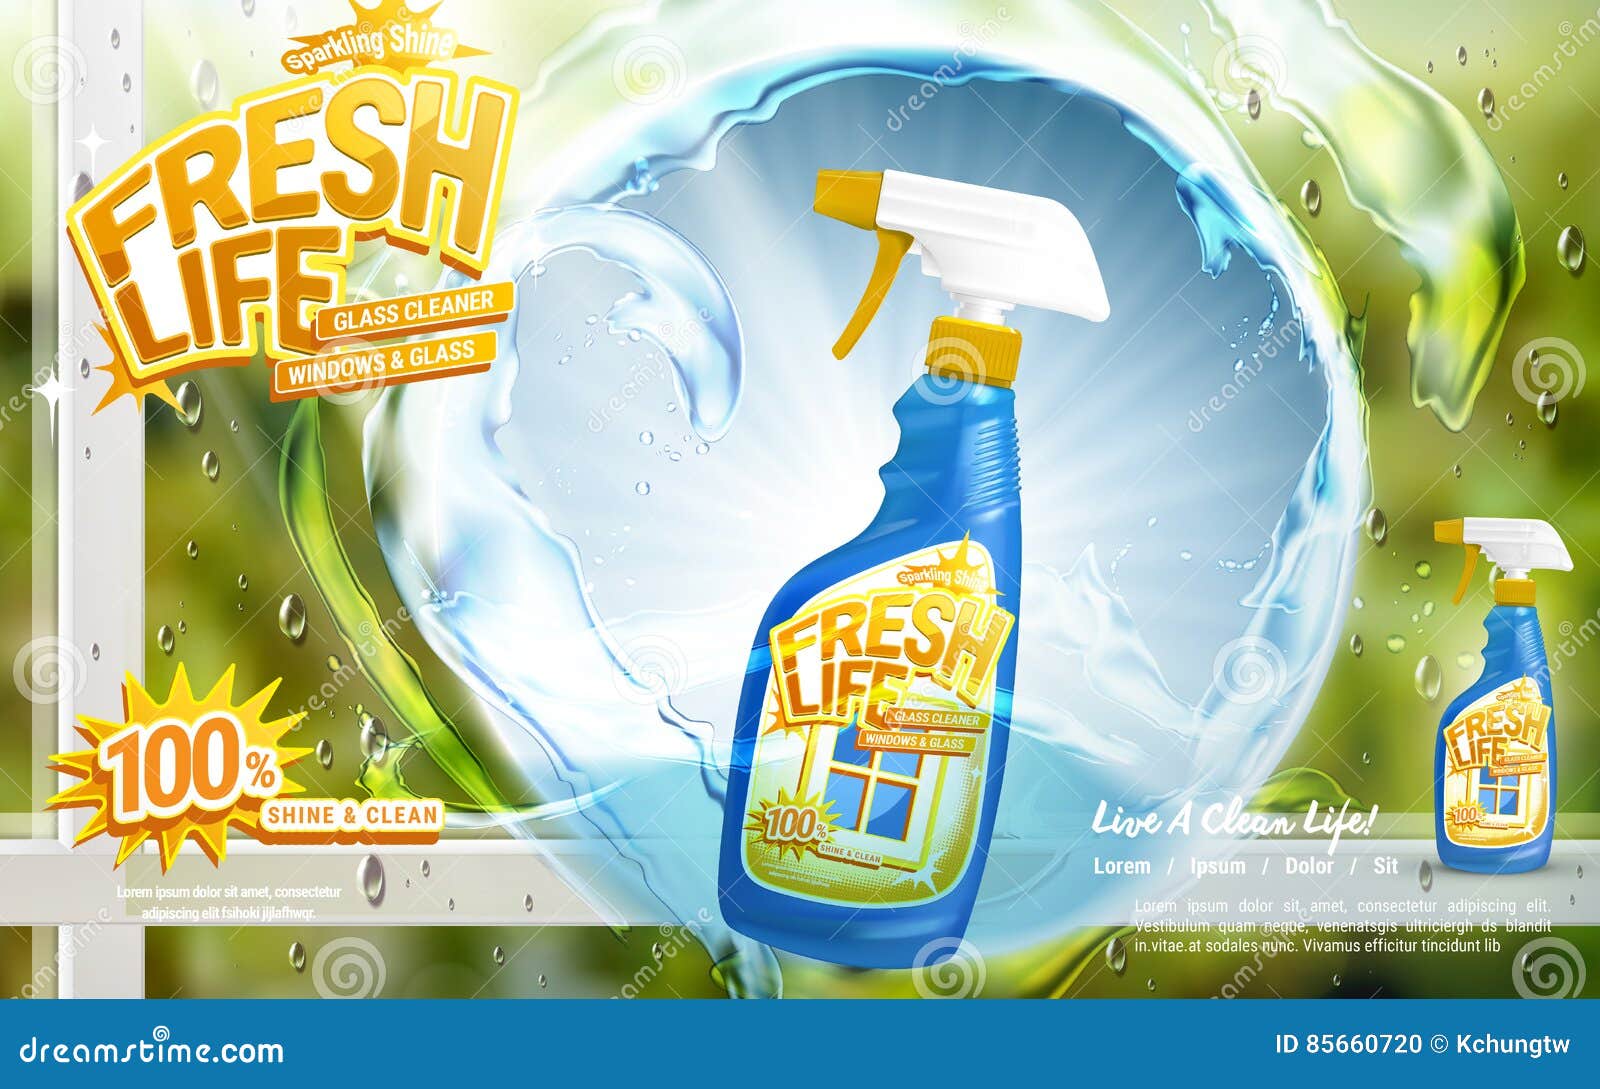 Реклама чистящего средства. Реклама средства для мытья окон. Моющее средство реклама. Средства для чистки реклама.